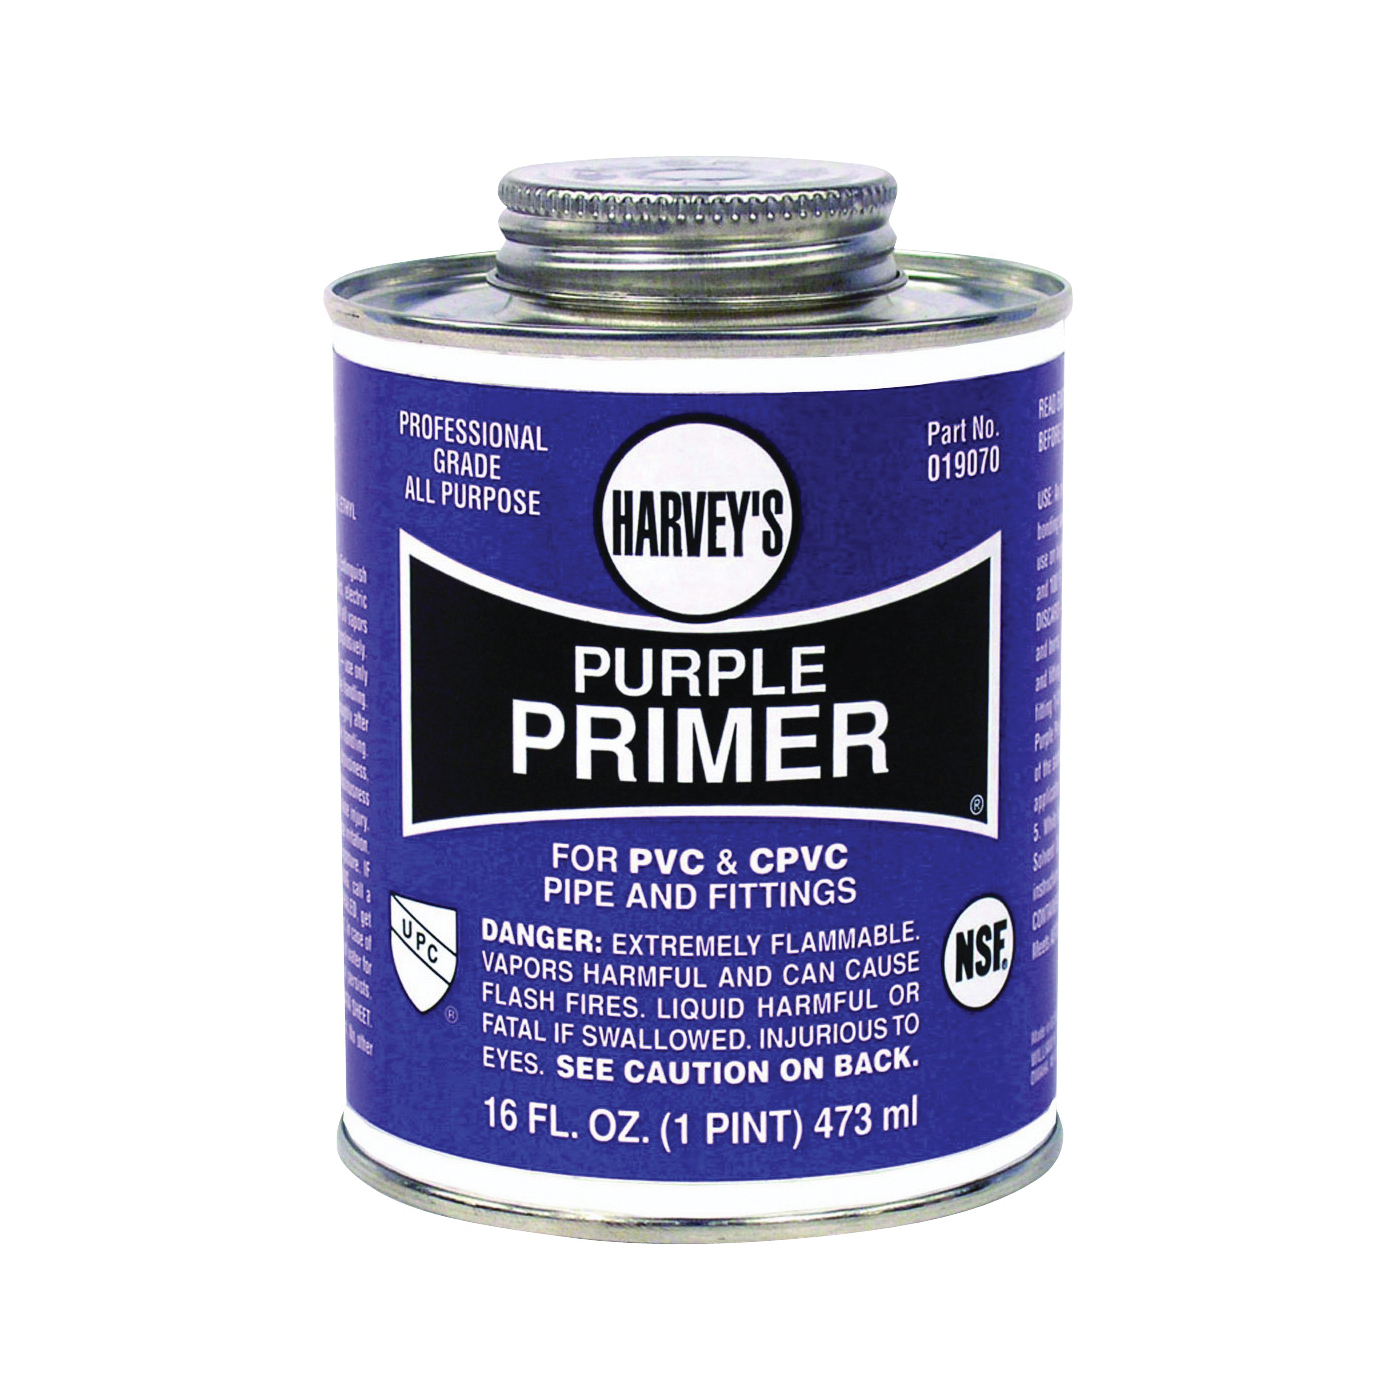 019070-12 All-Purpose Professional-Grade Primer, Liquid, Purple, 16 oz Can